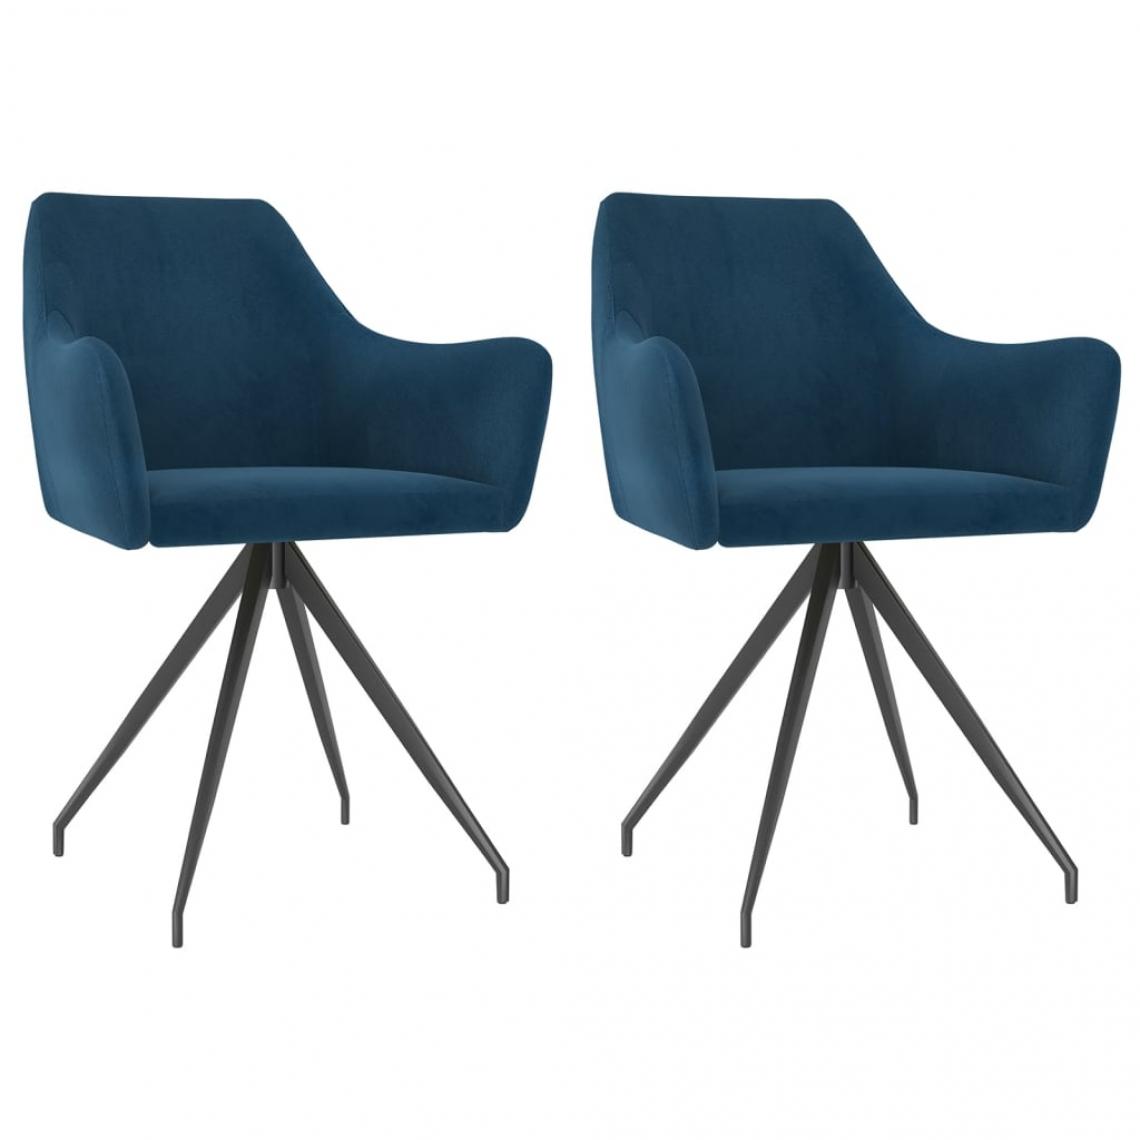 Decoshop26 - Lot de 2 chaises de salle à manger cuisine design moderne velours bleu CDS020261 - Chaises